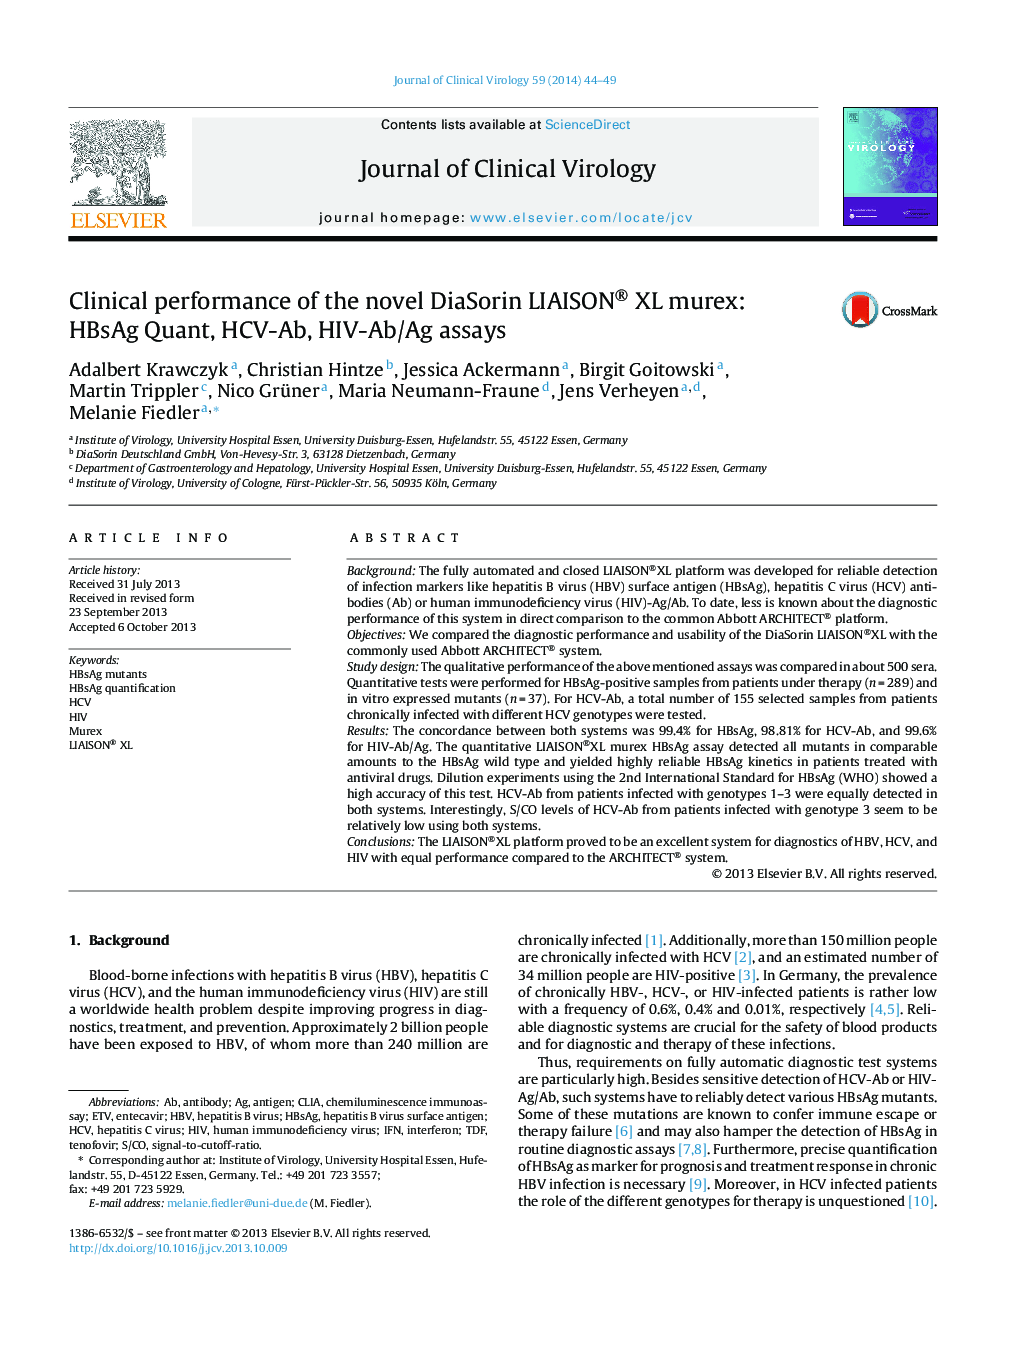 Clinical performance of the novel DiaSorin LIAISON® XL murex: HBsAg Quant, HCV-Ab, HIV-Ab/Ag assays